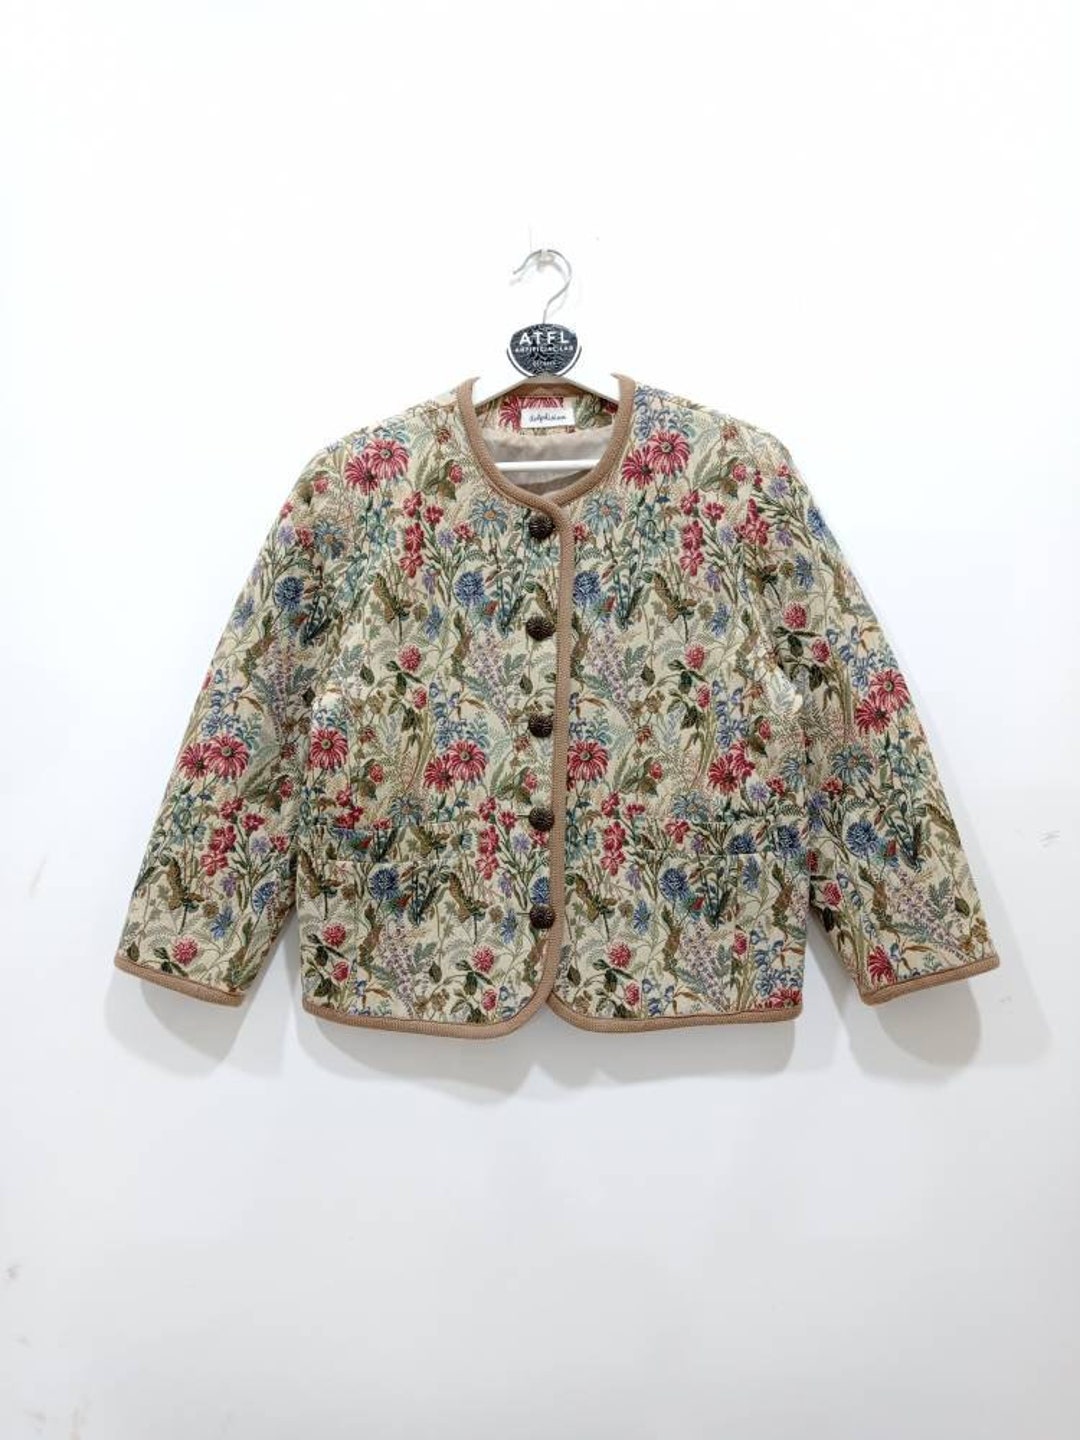 Vintage Delphinium Japan Embroidery Jacket Menswear Streetwear - Etsy